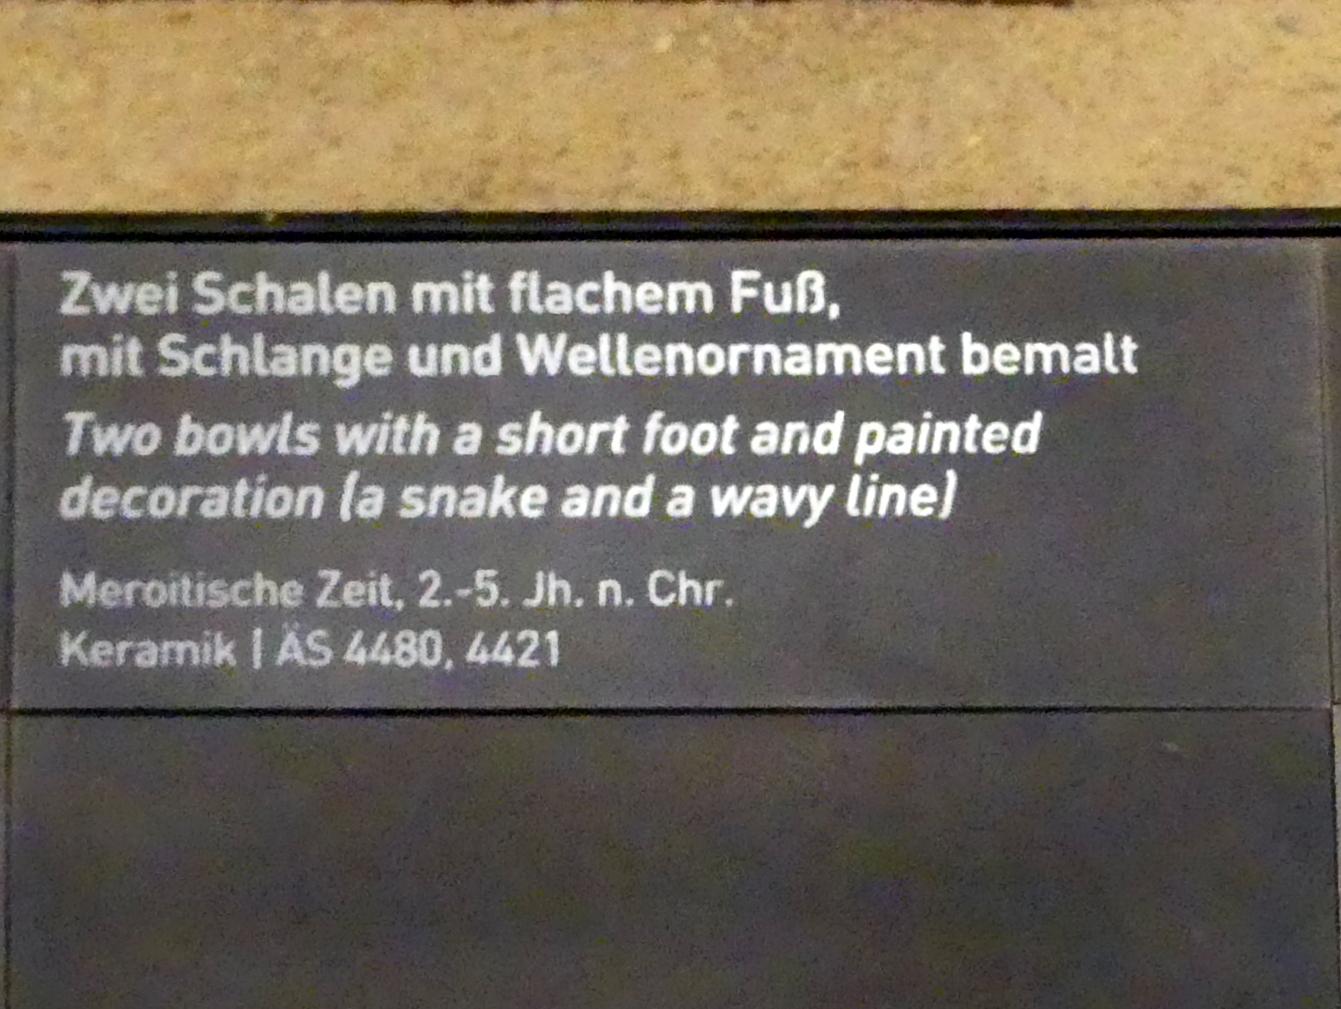 Schale mit flachem Fuß, mit Schlange bemalt, Meroitische Zeit, 200 v. Chr. - 500 n. Chr., 100 - 500, Bild 2/2